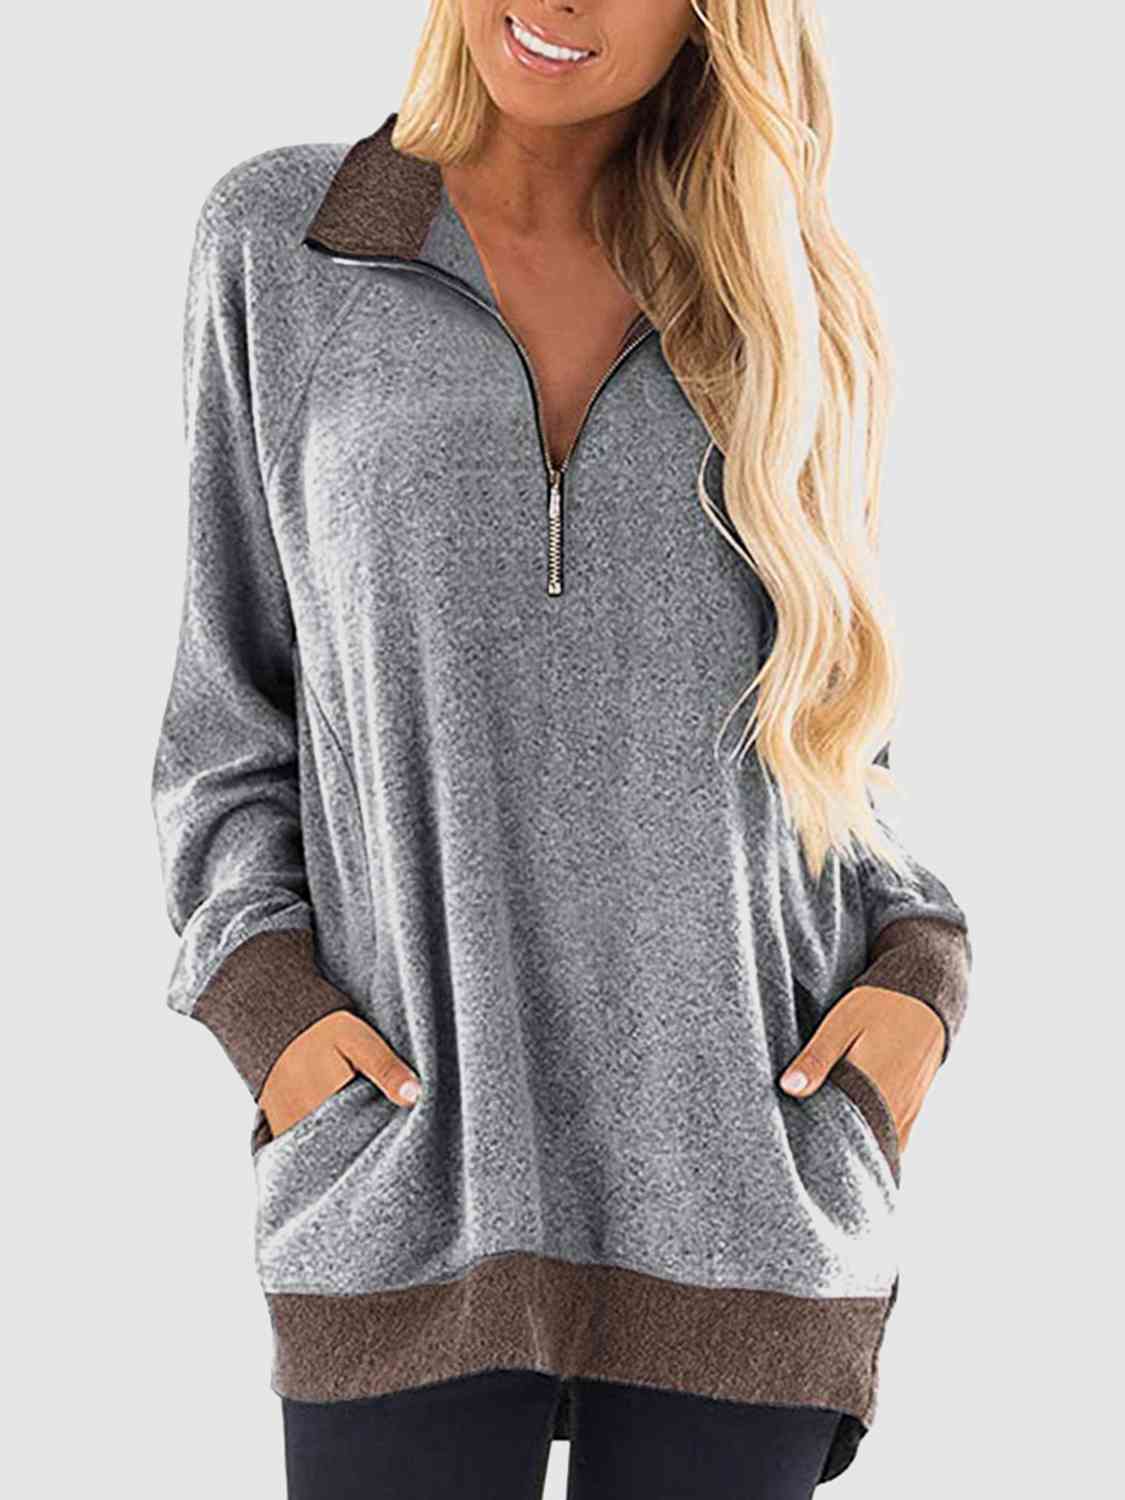 Contrast Half Zip Sweatshirt with Pockets